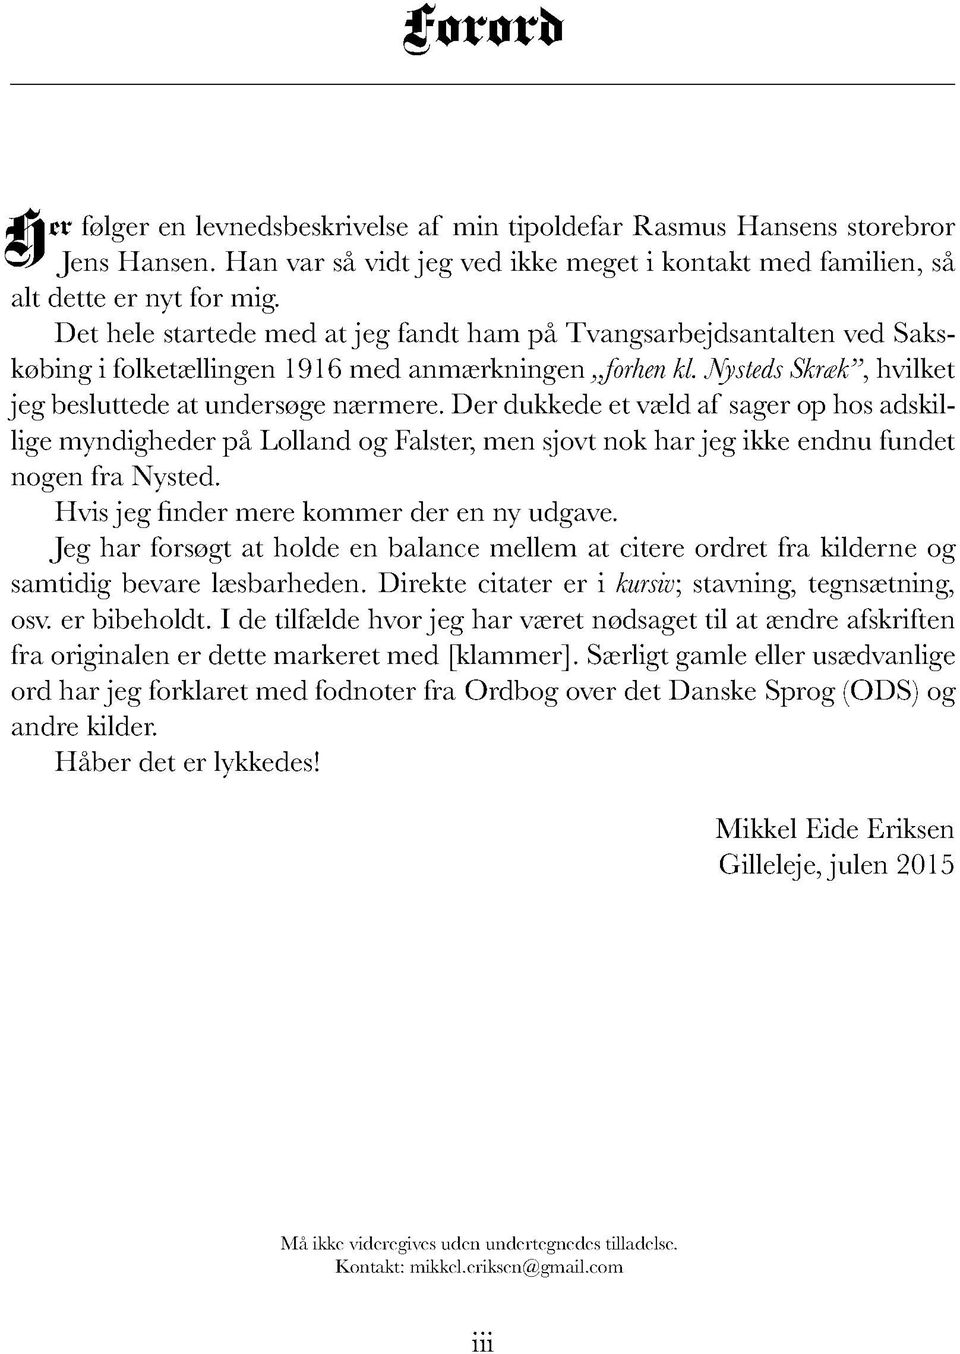 Mikkel Eide Eriksen. Gilleleje - PDF Gratis